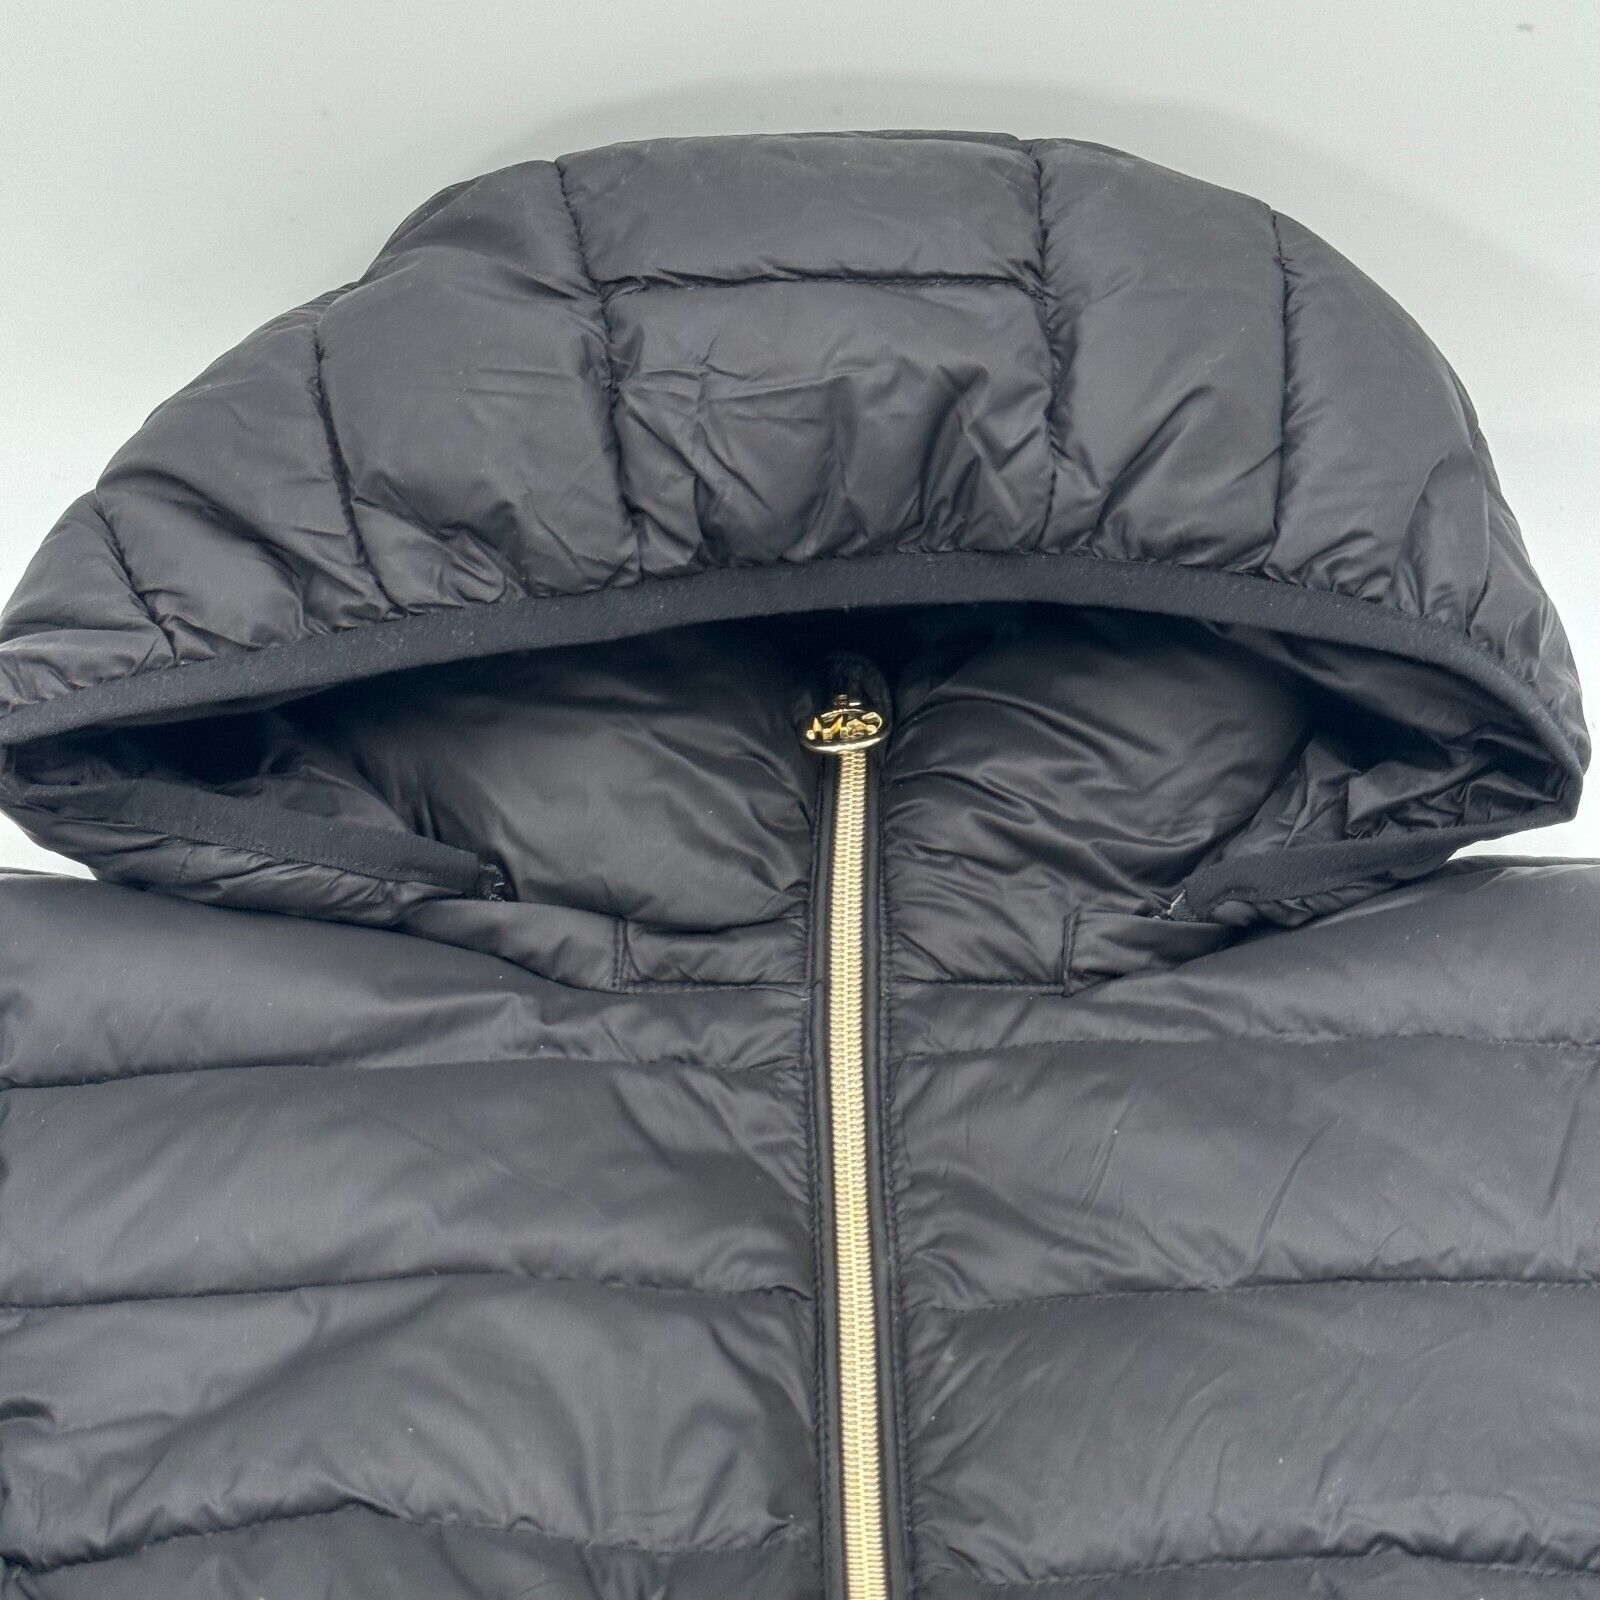 Michael Kors Black Gold Puffer Jacket Packable Down Fill Hood Zip Womens Size M